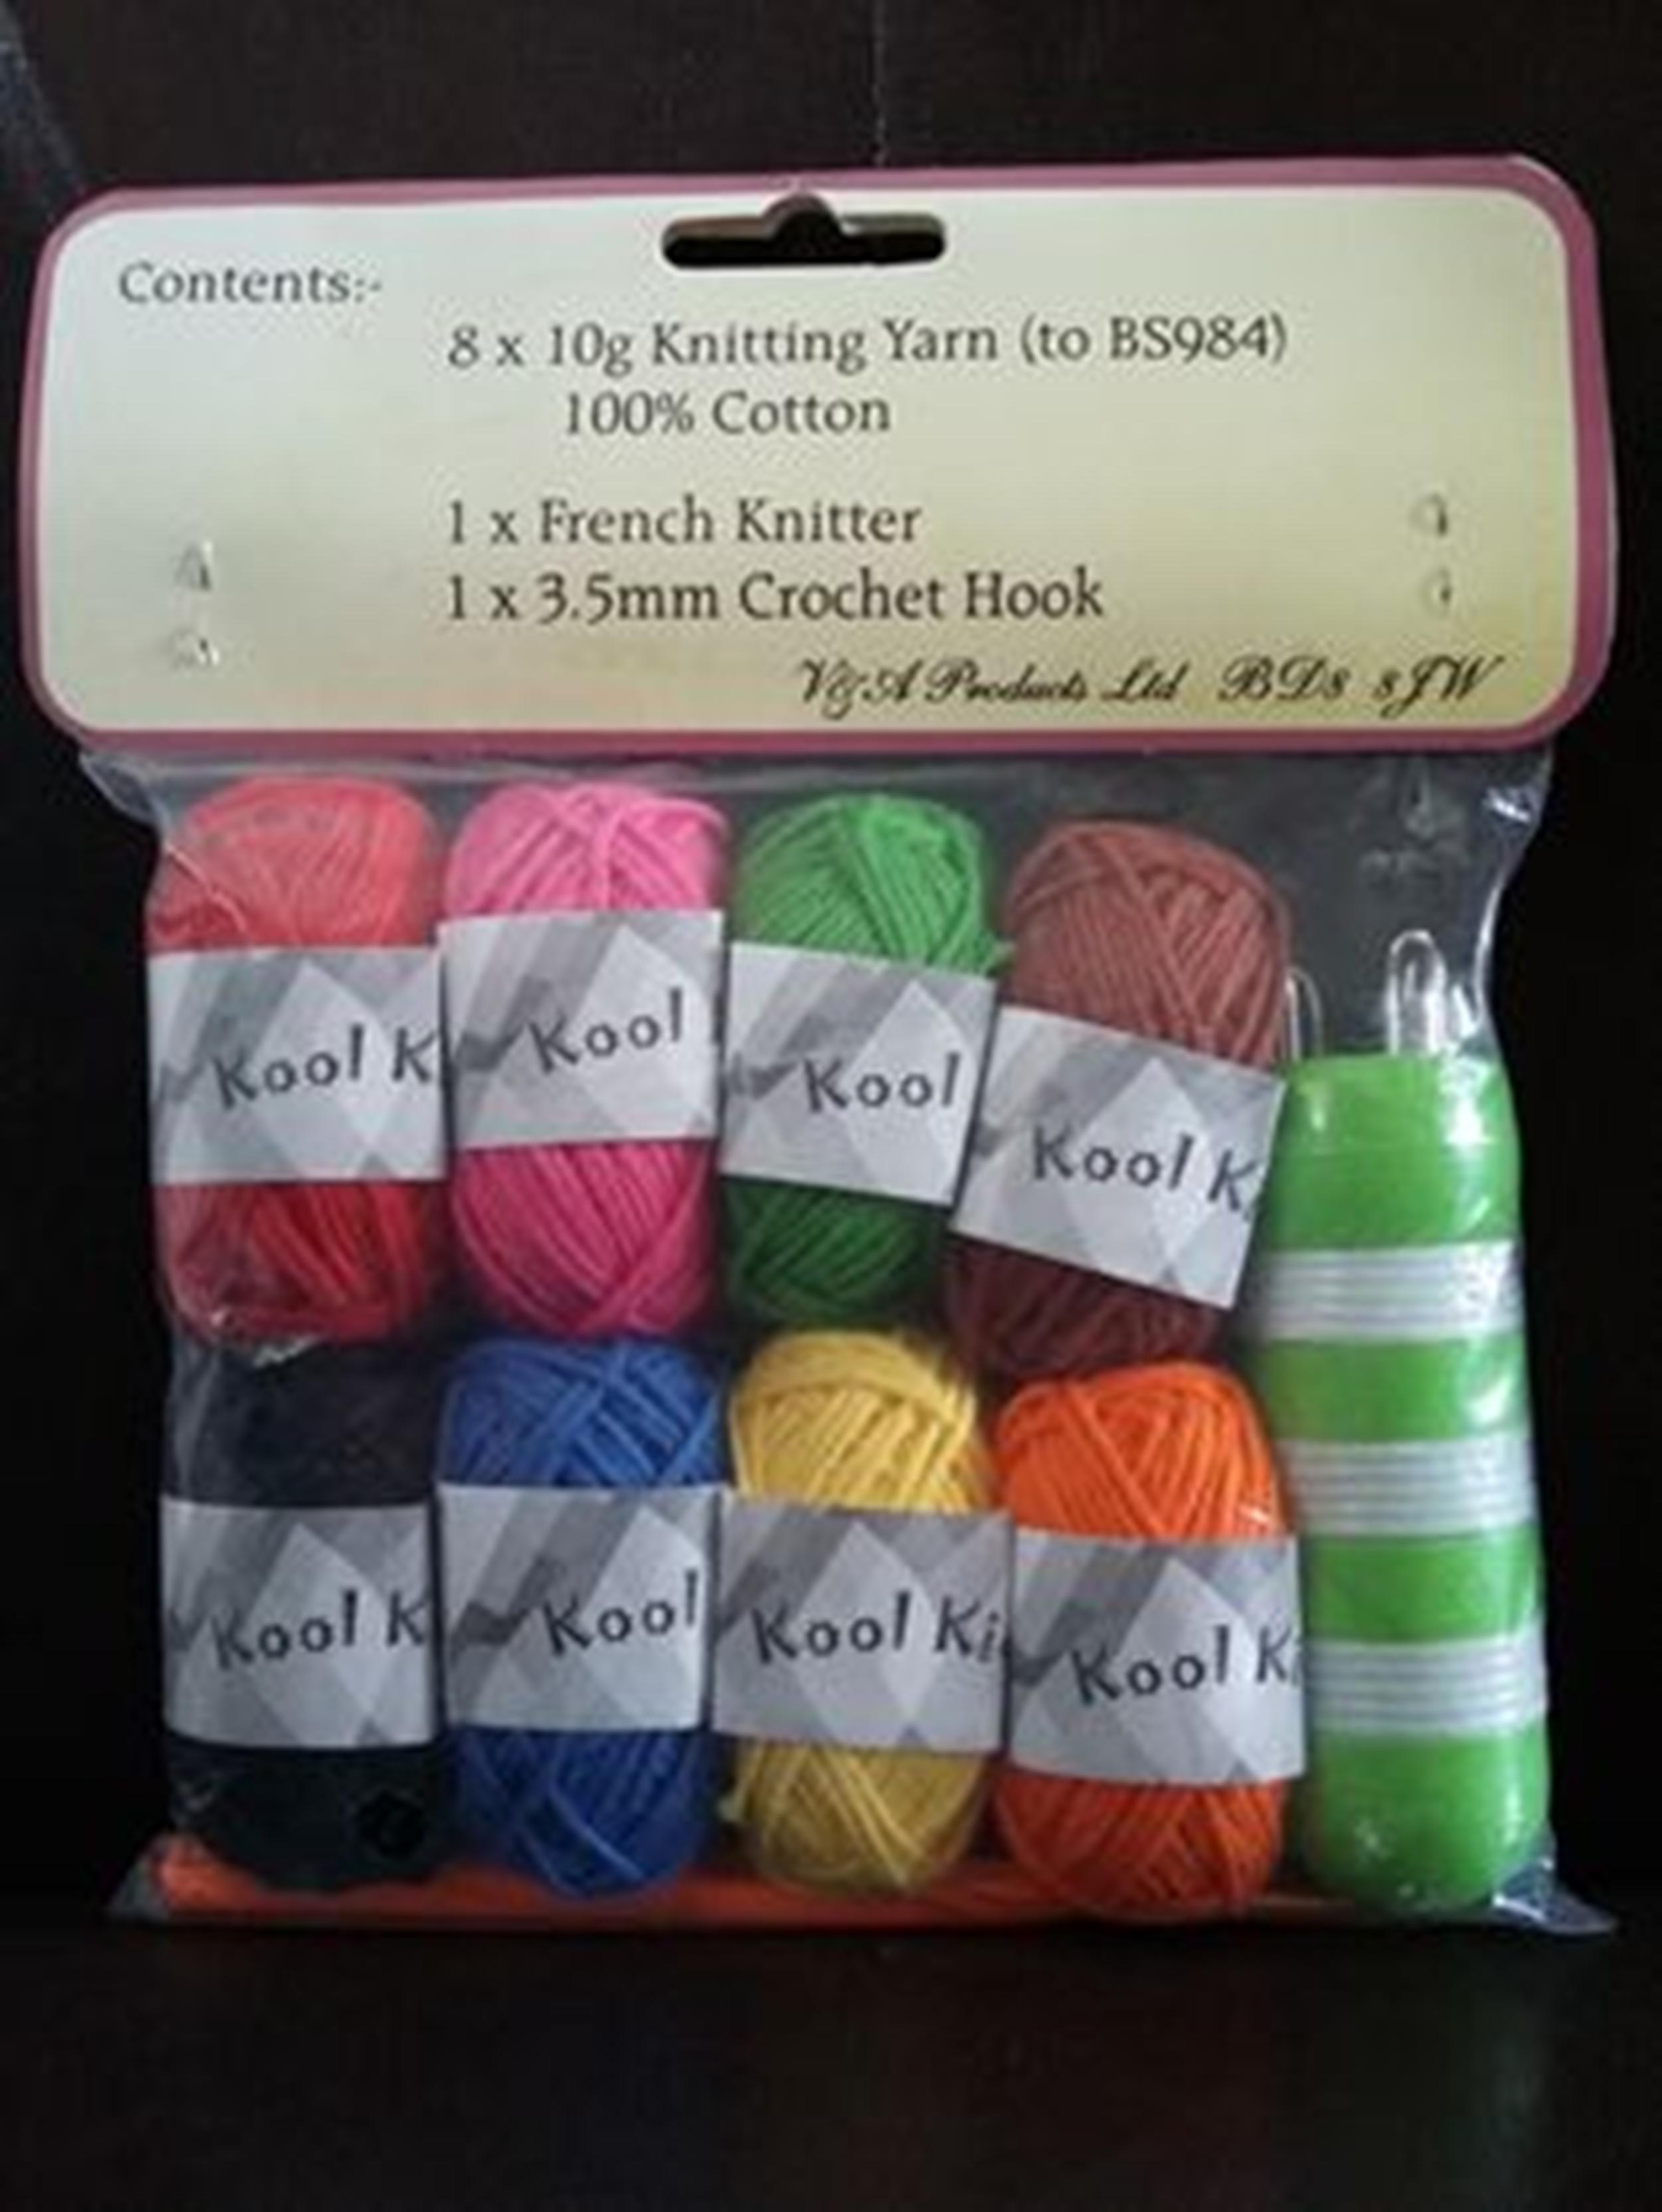 Kool Kidz<P>French Knitting Kit